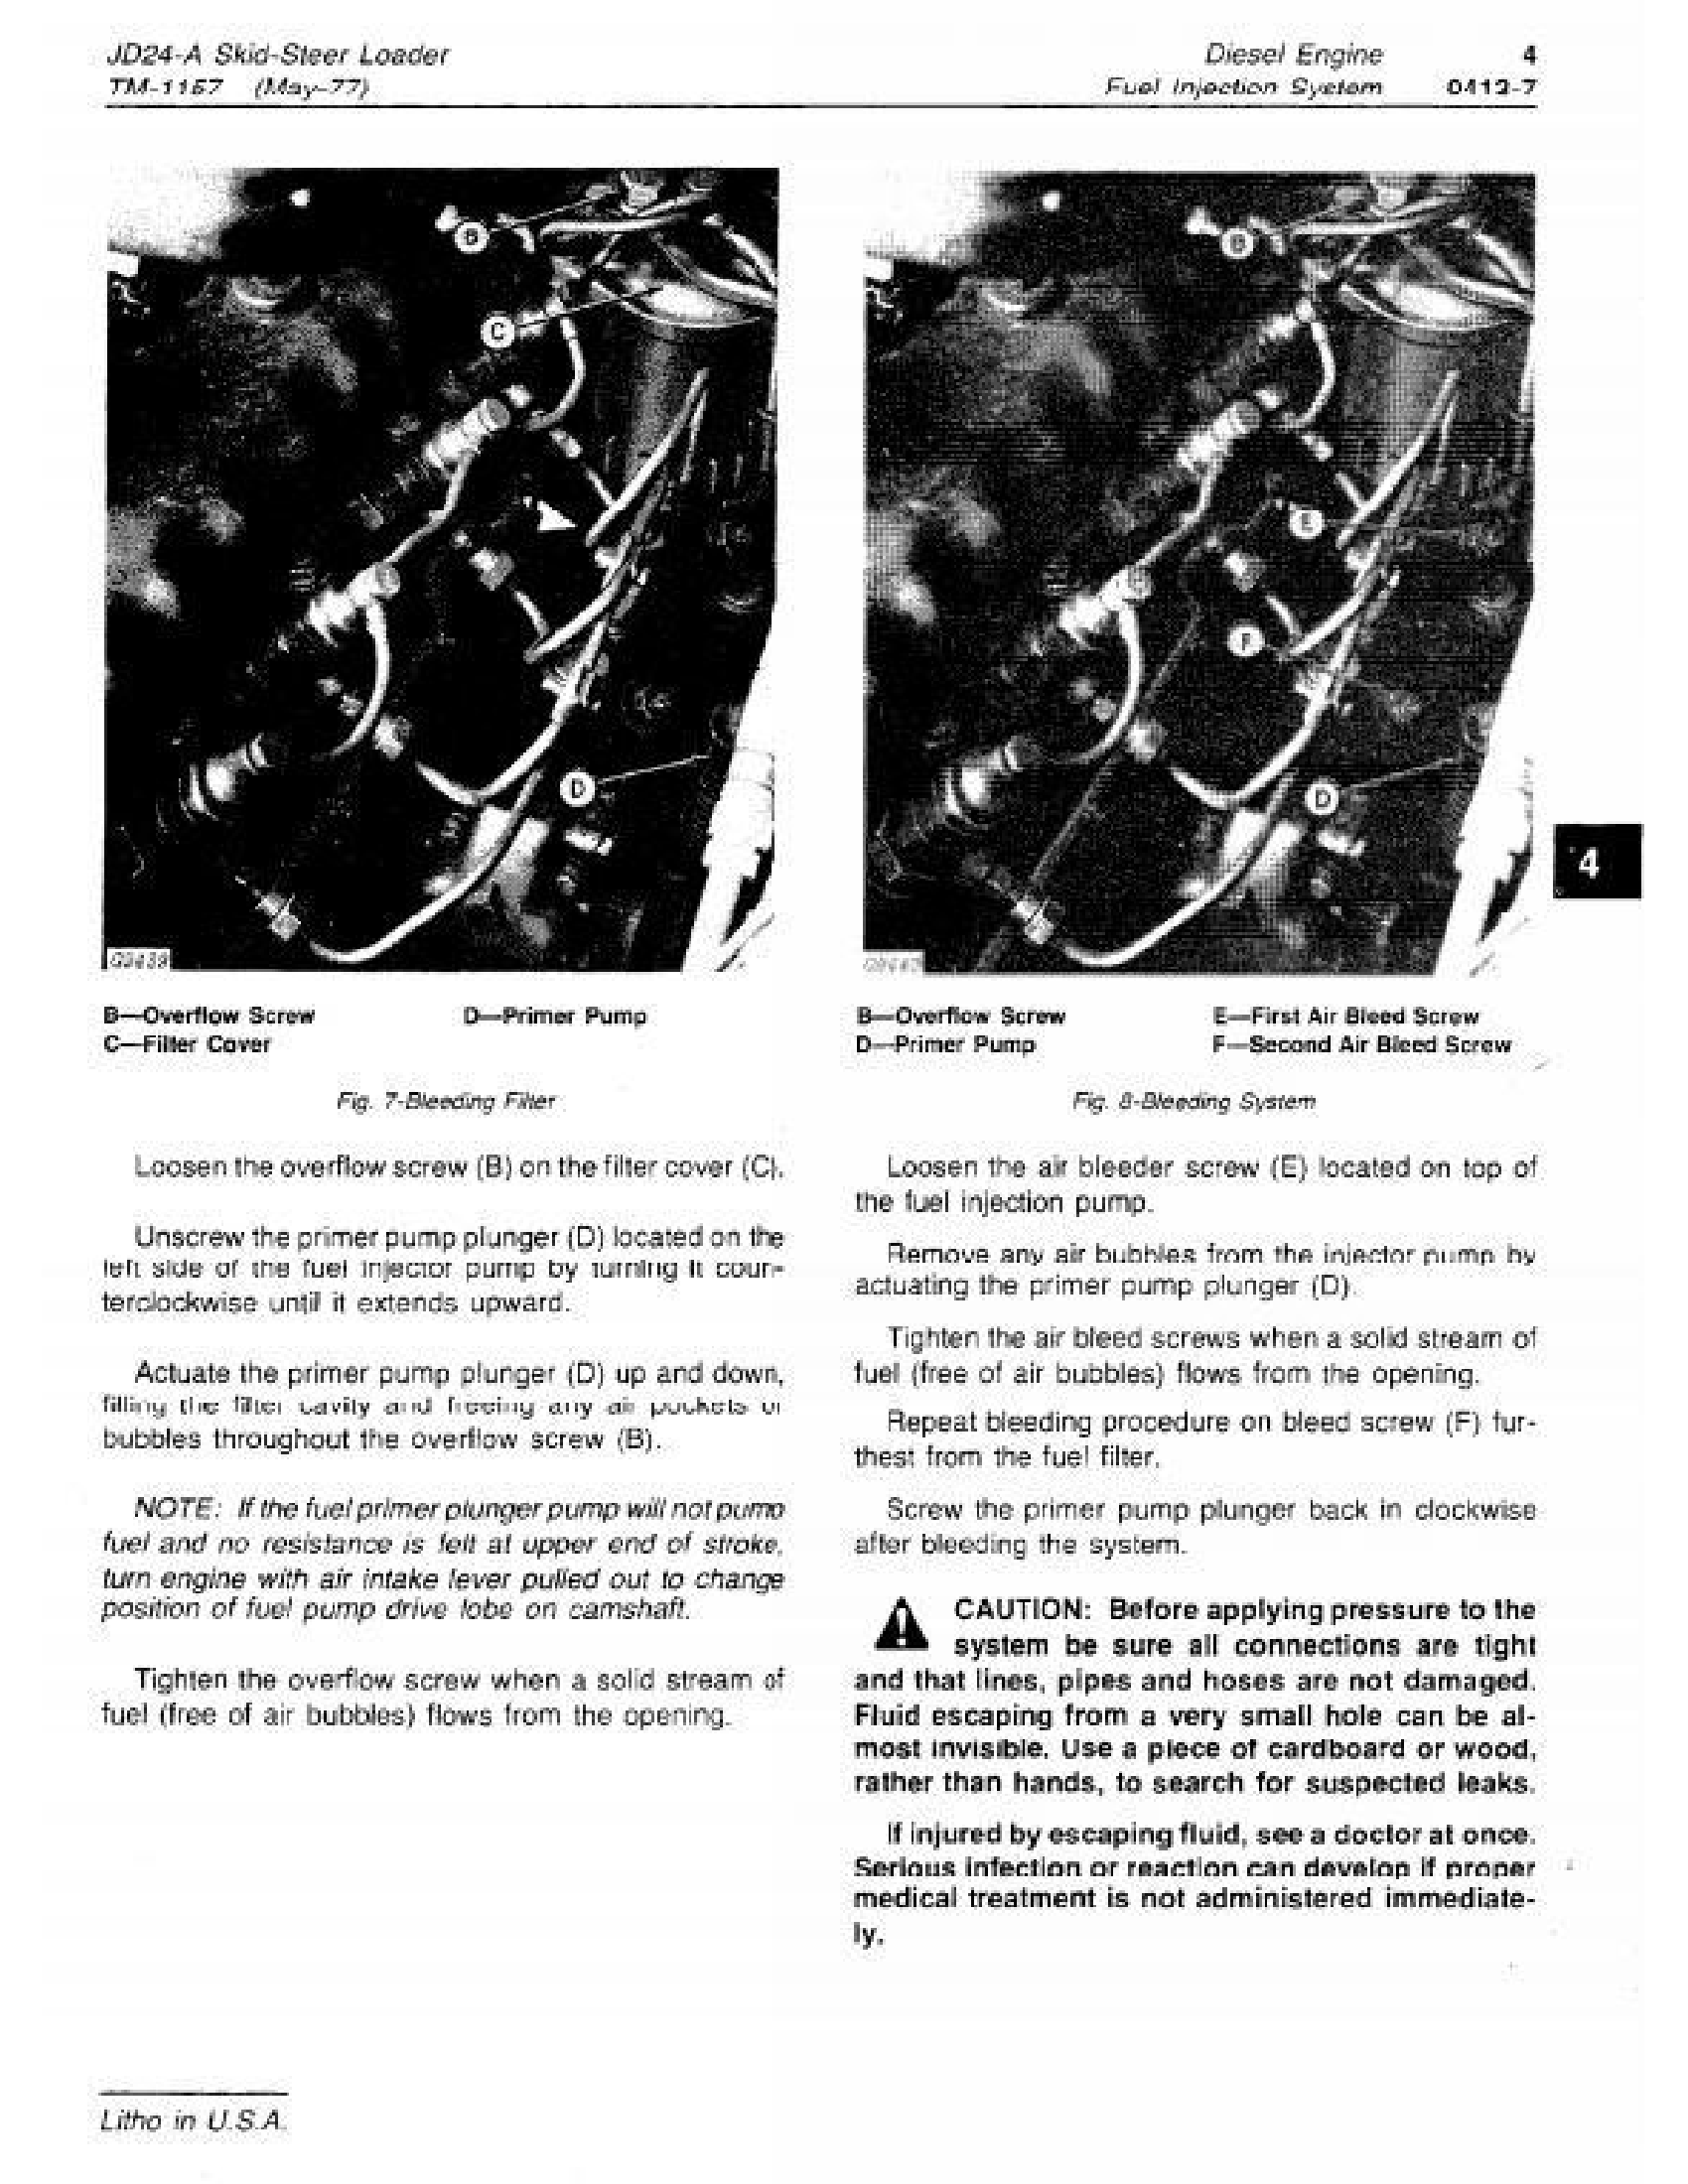 John Deere 2554 manual pdf